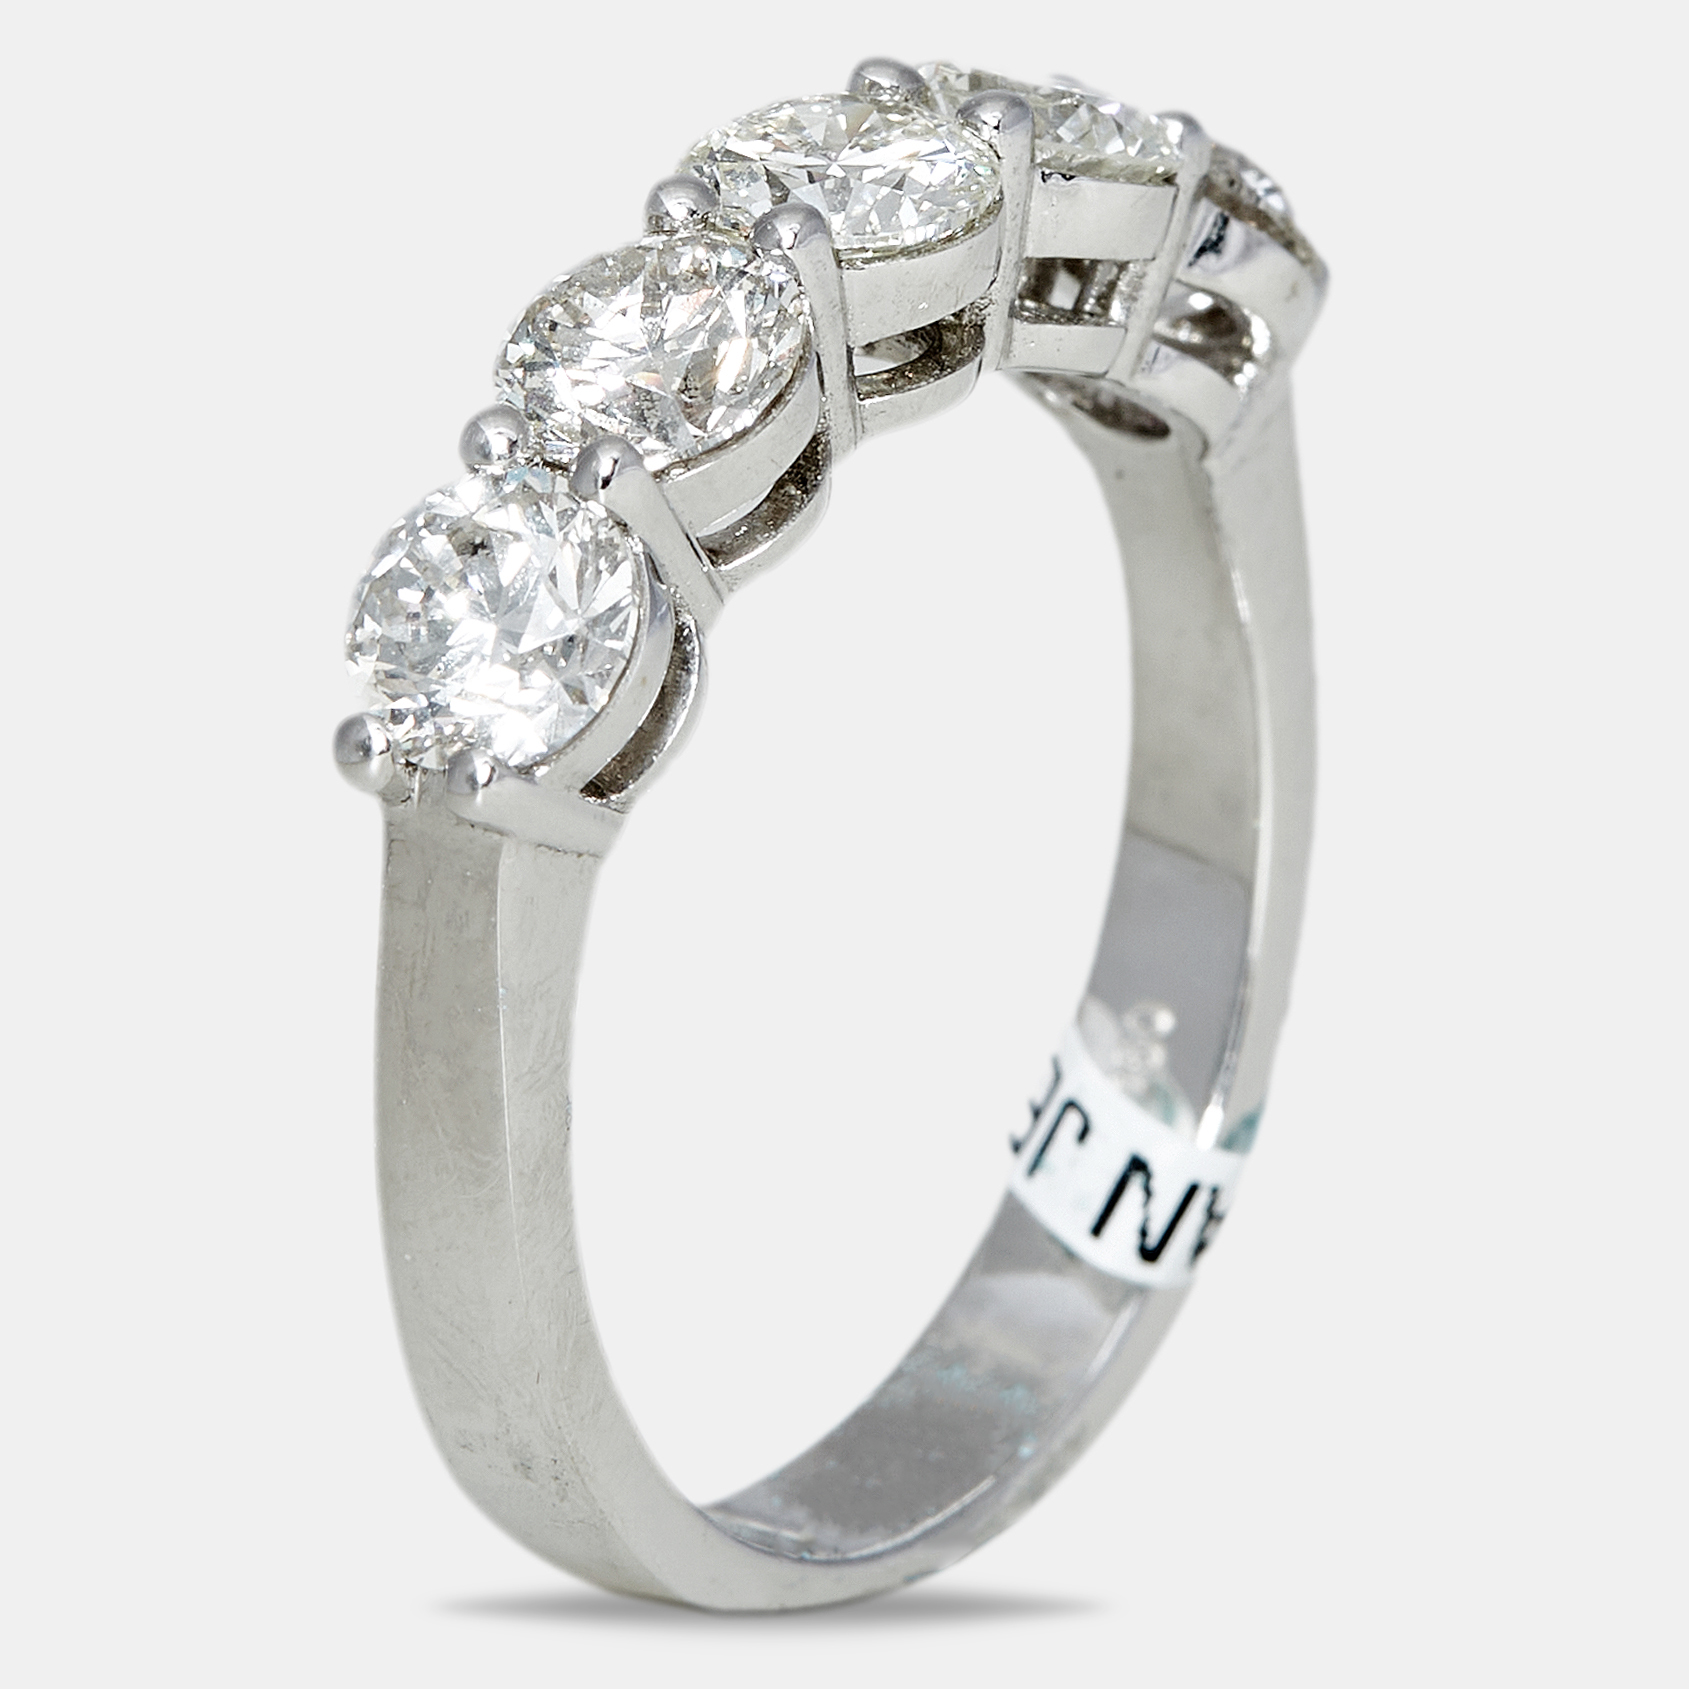 

18k White Gold 1.7 ct Diamond Ring EU 53